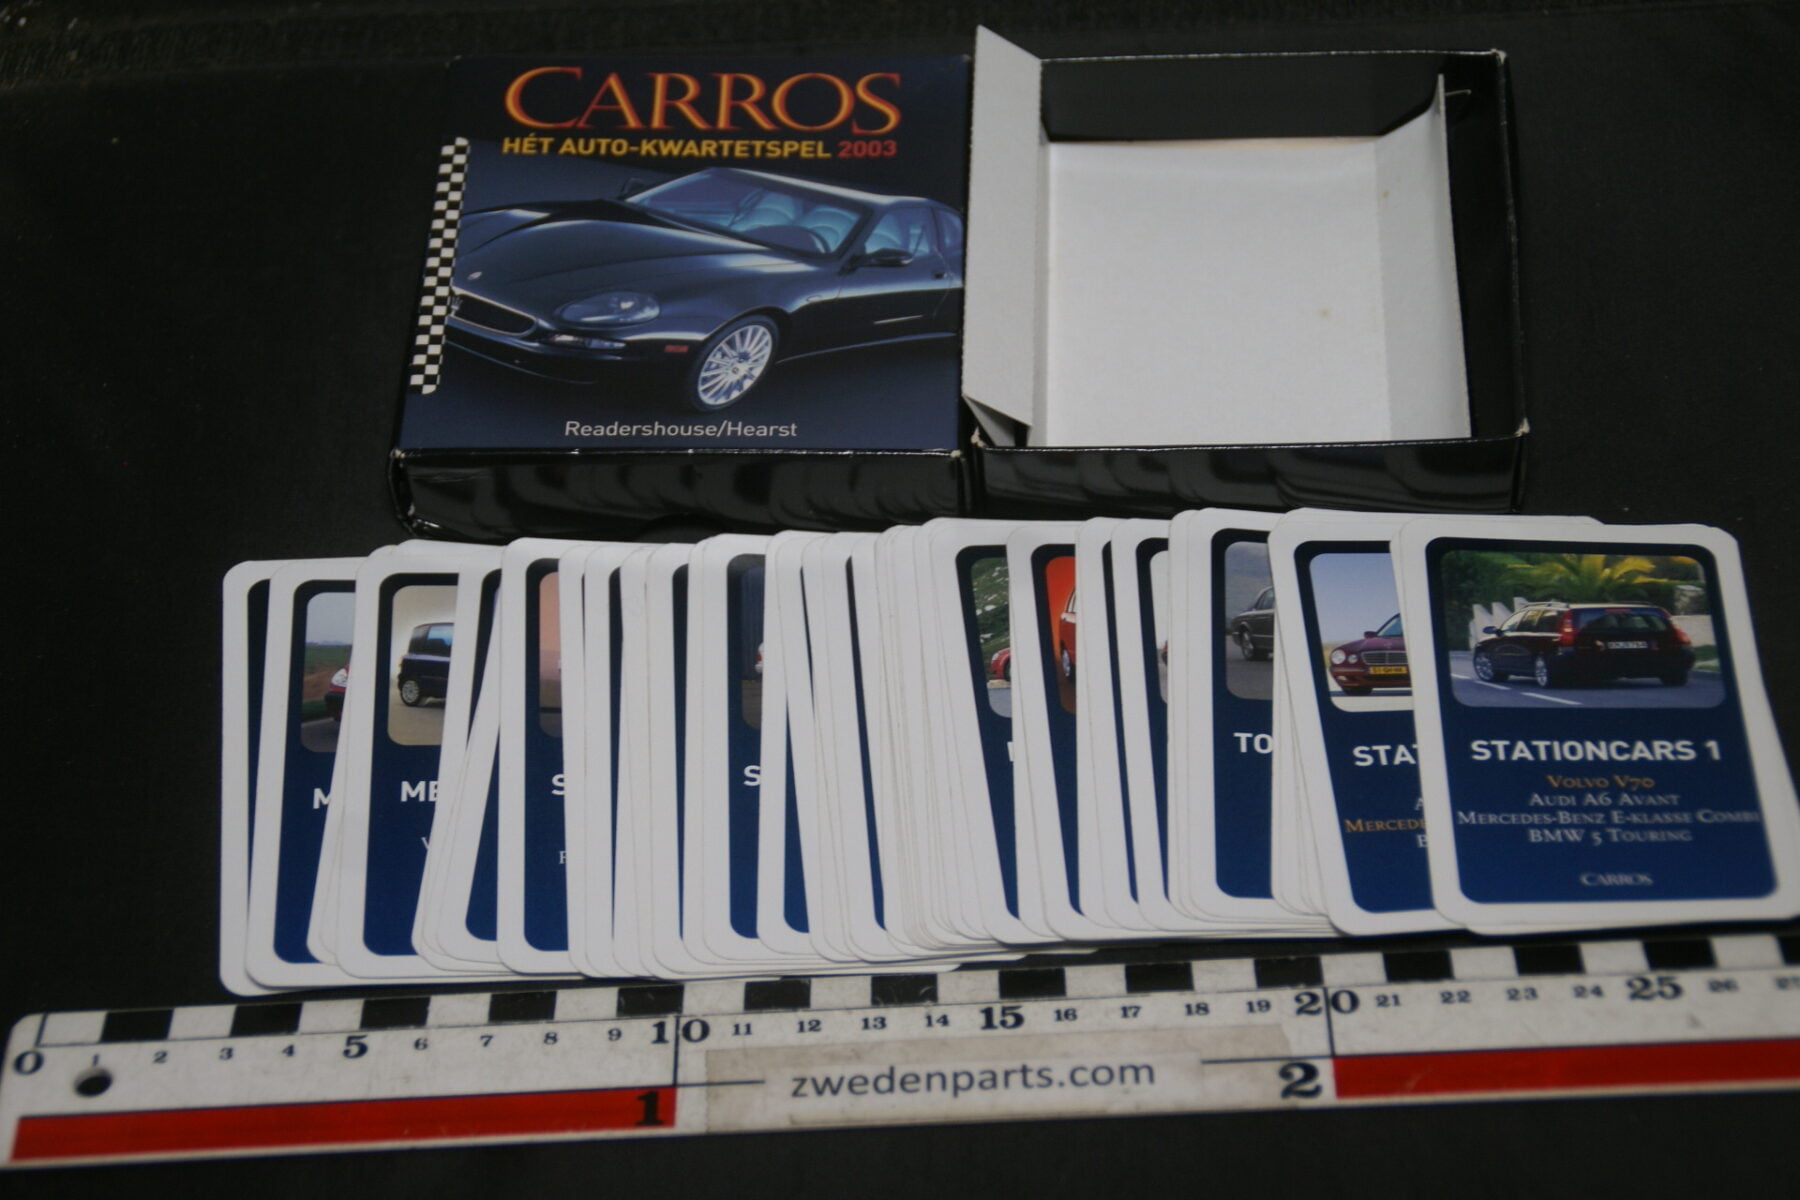 DSC02384 2003 autokwartetspel Carros Hearst-4f3e744d